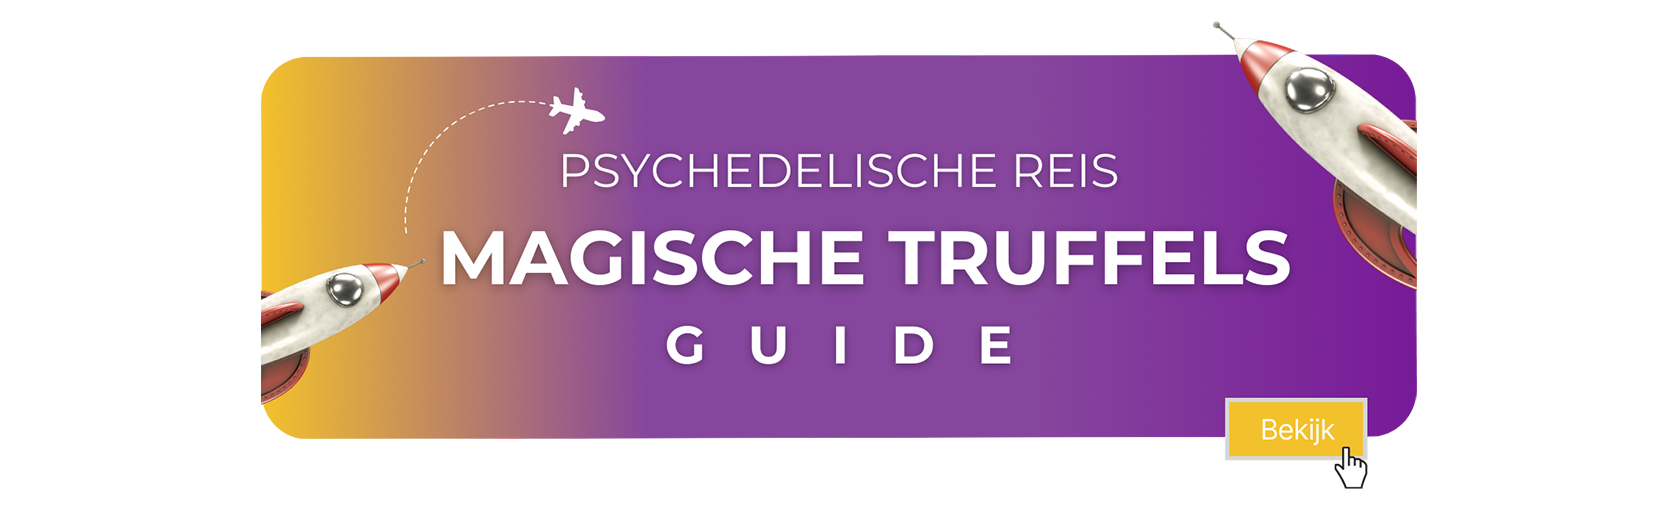 truffle guide - Nederlands.jpg